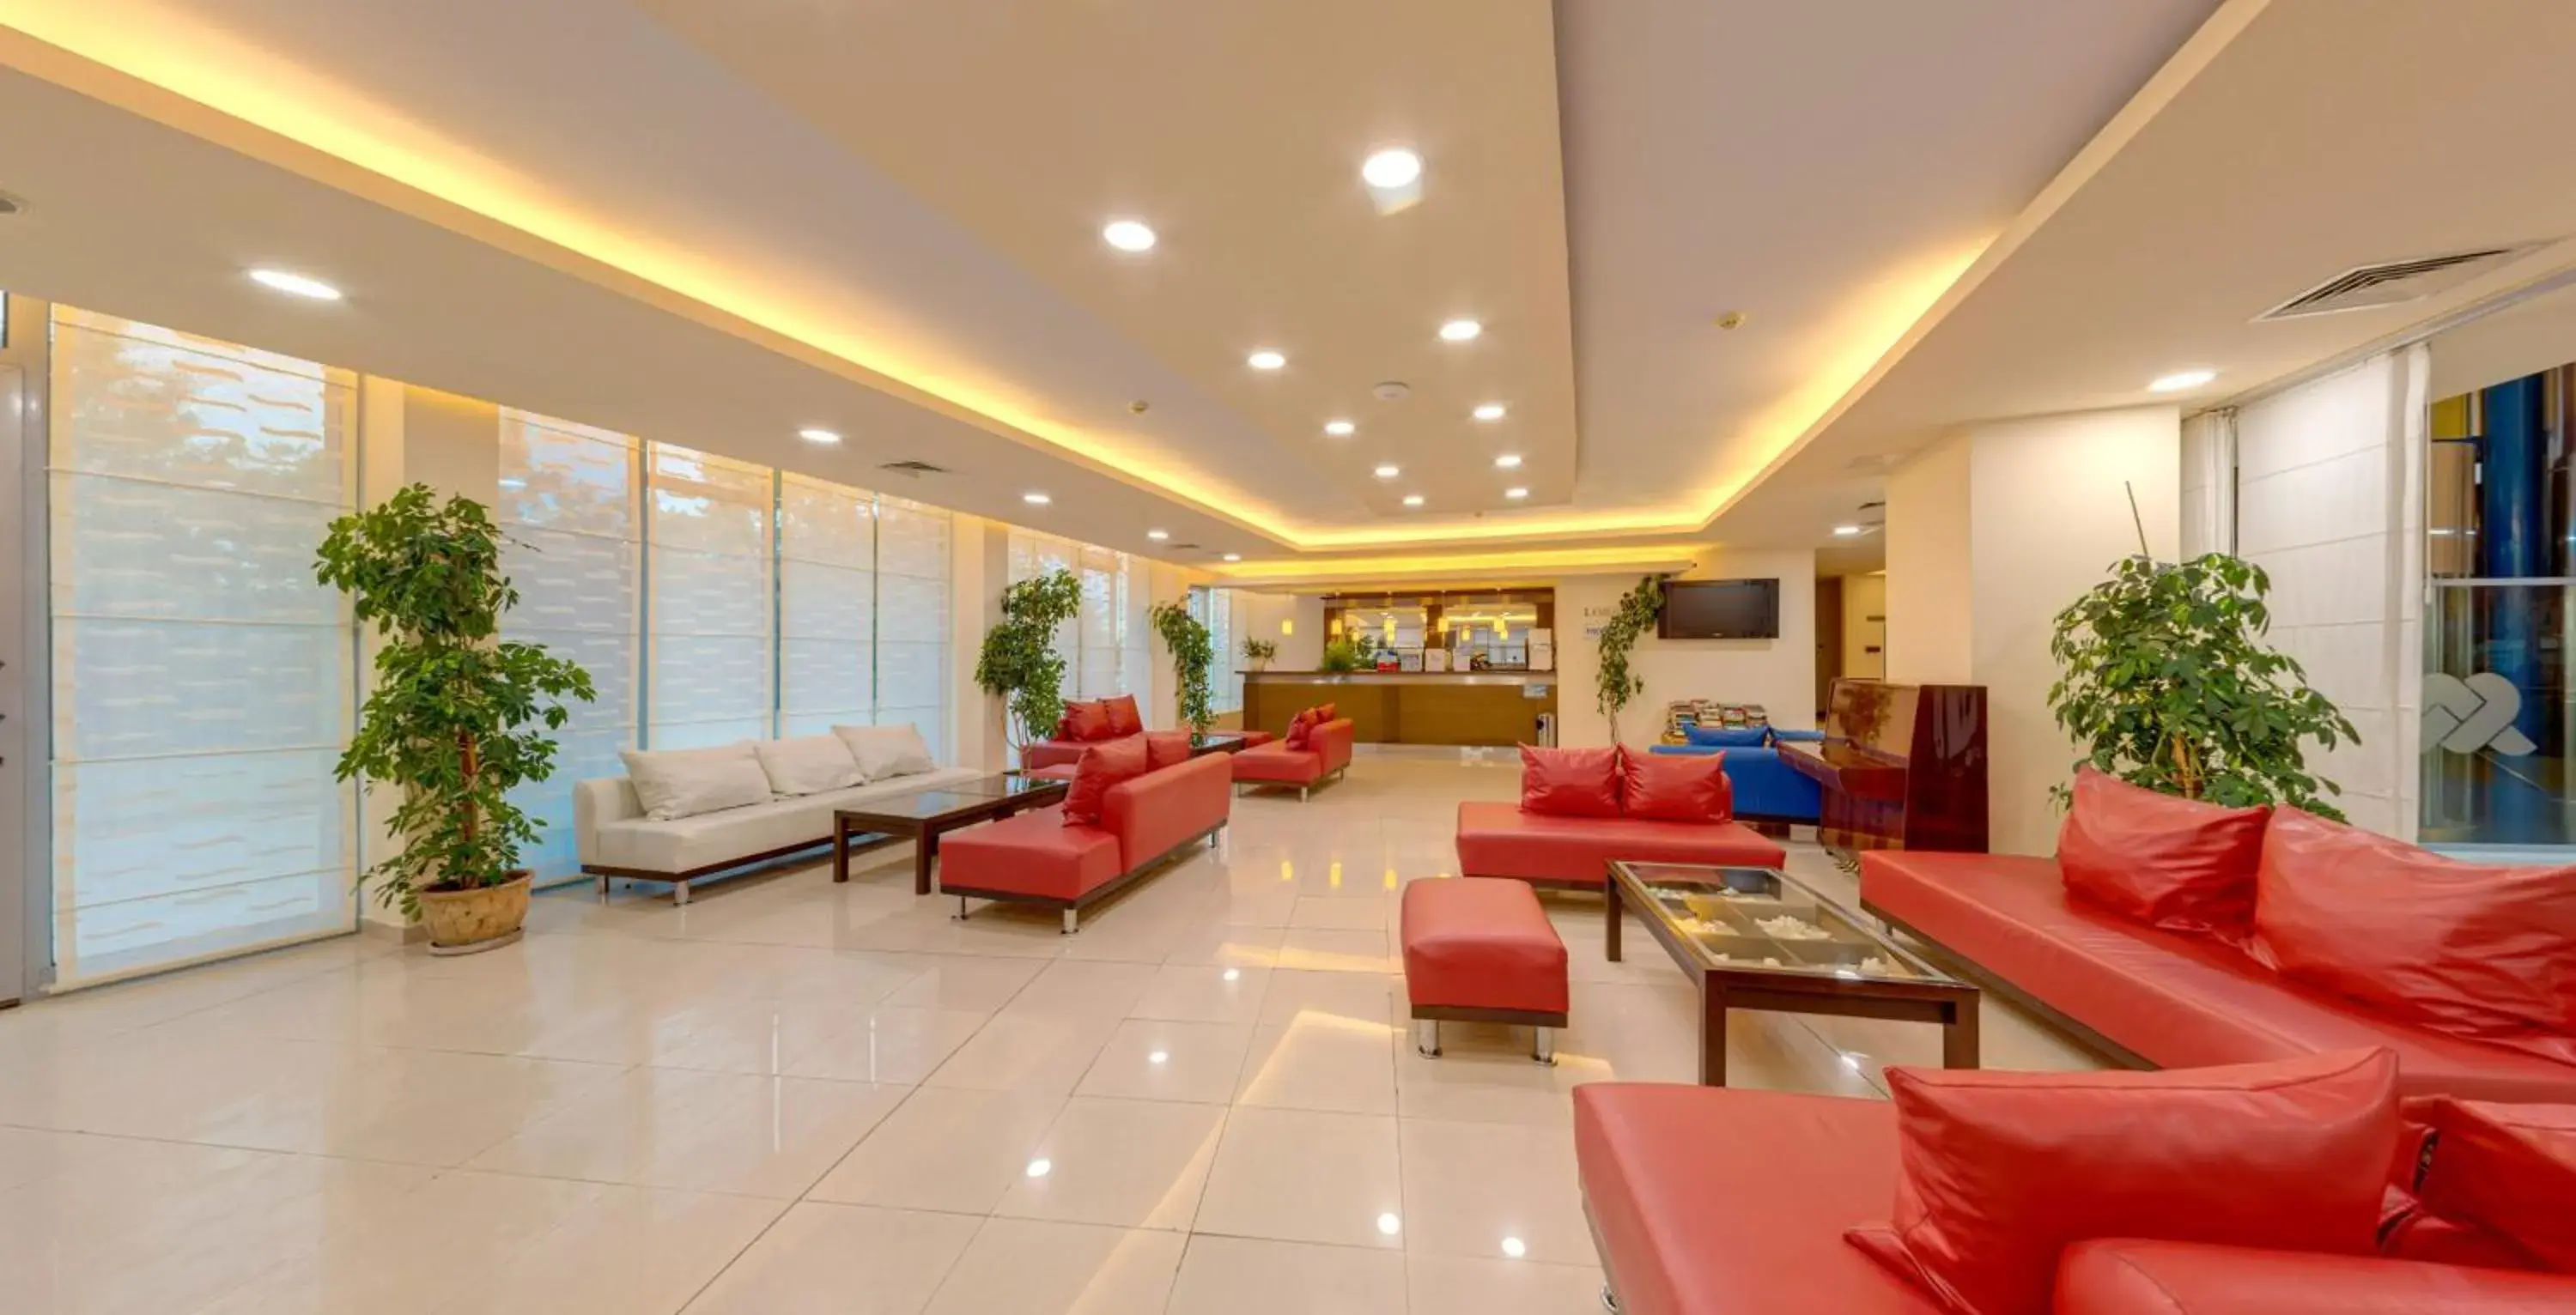 Lobby or reception, Lobby/Reception in Sol Marina Palace Hotel